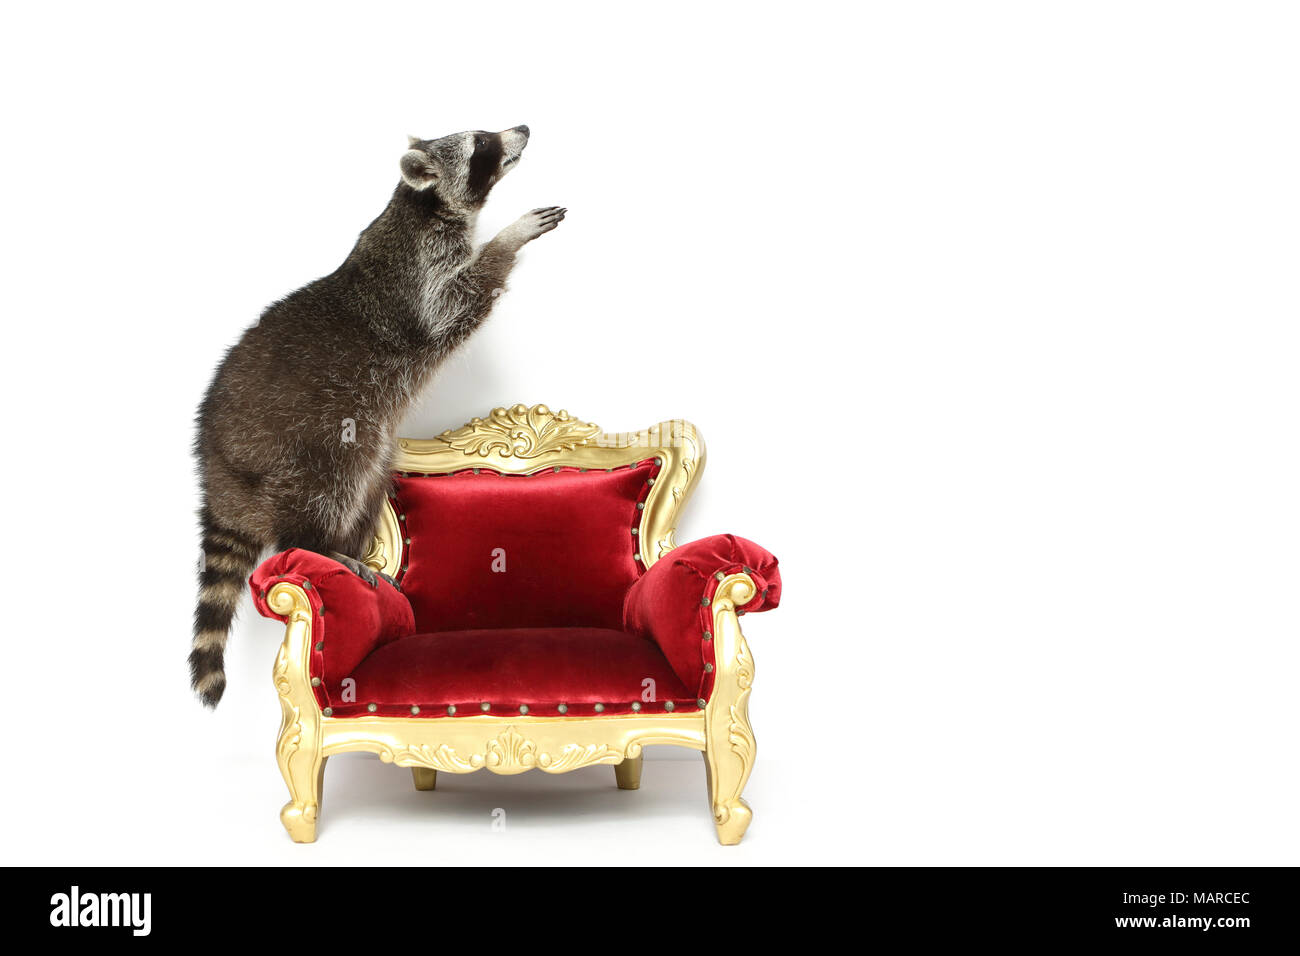 Le raton laveur (Procyon lotor). Des profils debout sur un fauteuil baroque. Studio photo sur un fond blanc. Allemagne Banque D'Images